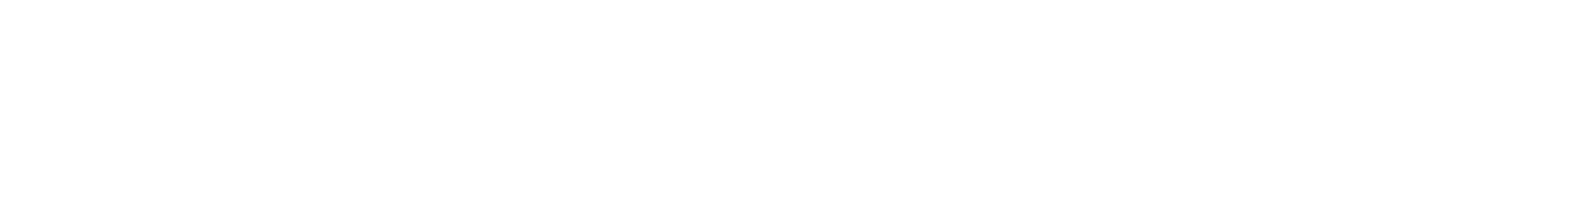 Xenon Pharmaceuticals logo grand pour les fonds sombres (PNG transparent)